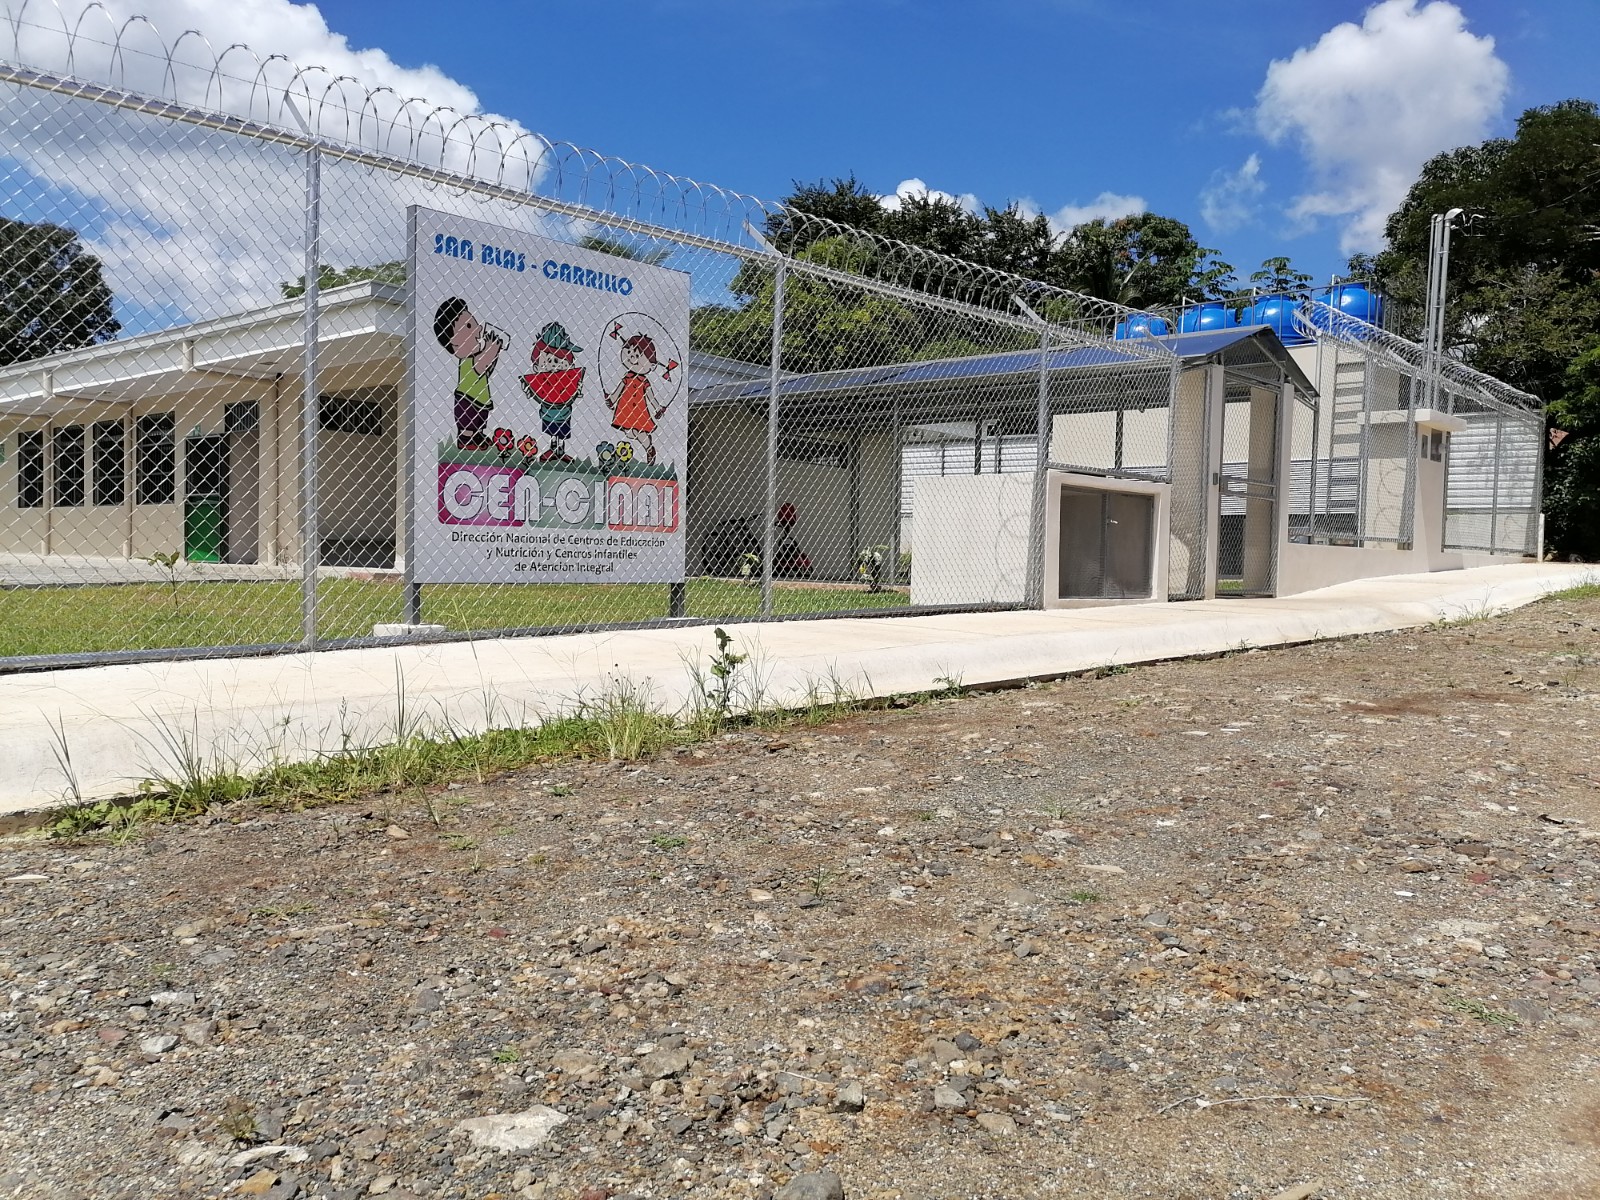 CEN-CINAI de San Blas de Carrillo beneficiará a 95 familias